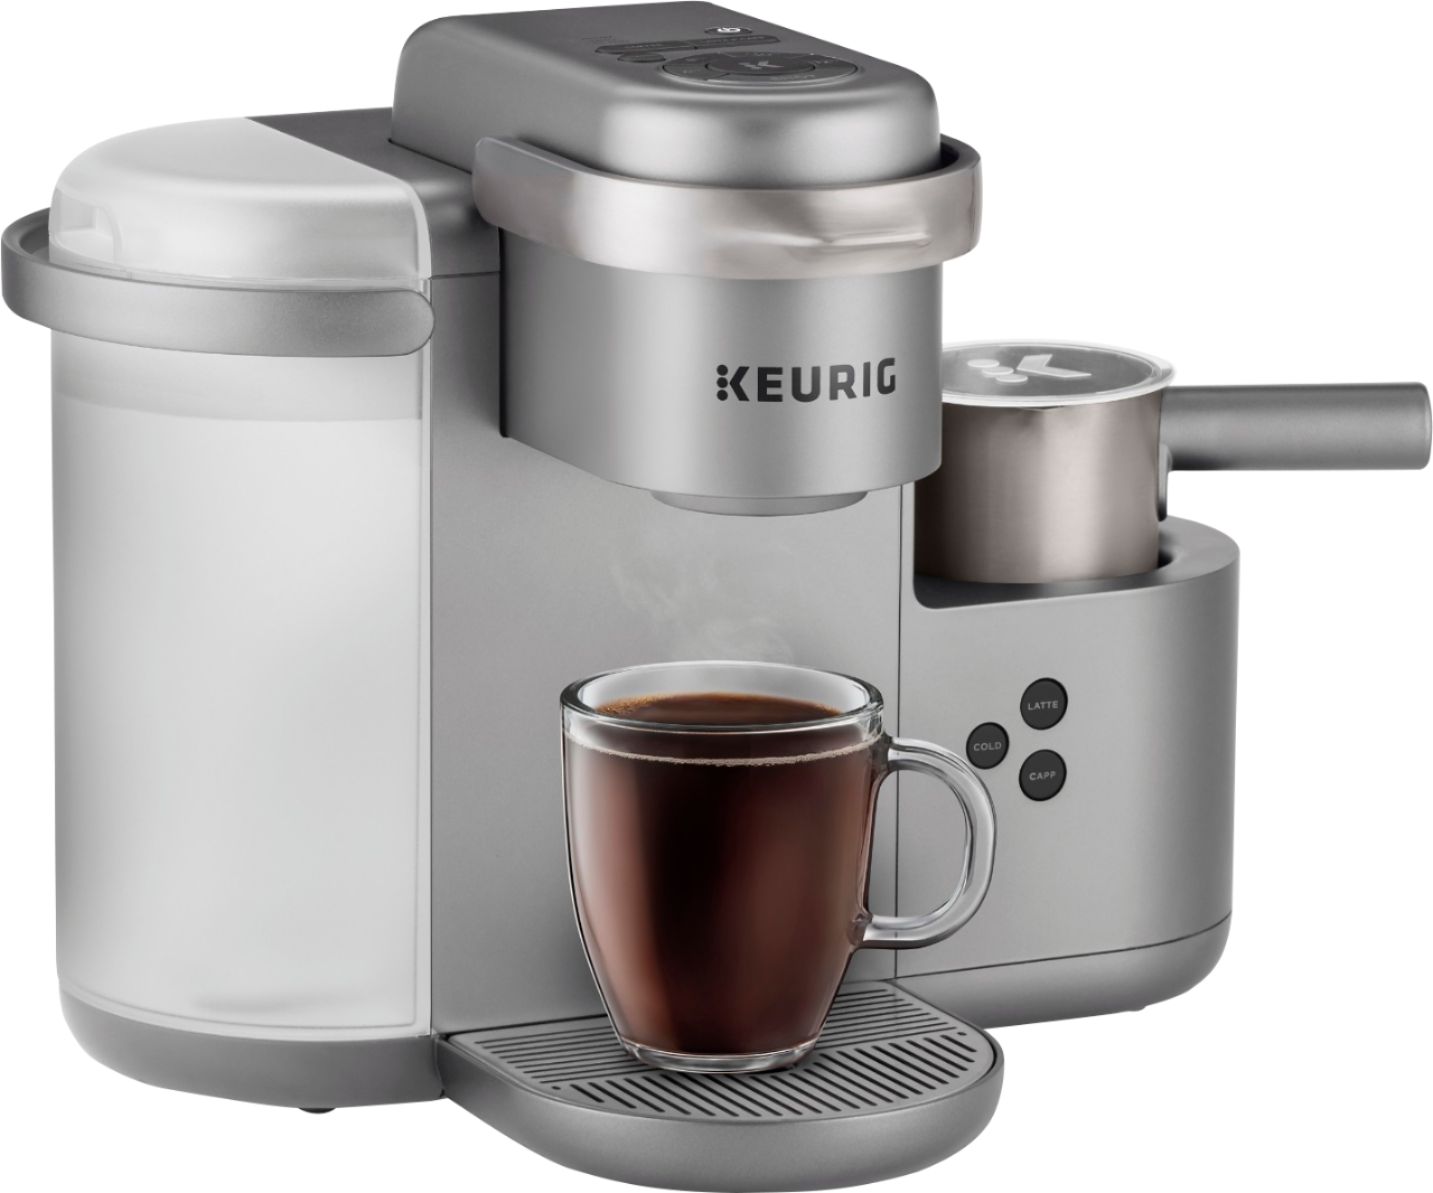 Best Buy: Keurig K-Cafe Special Edition Single Serve K-Cup Pod